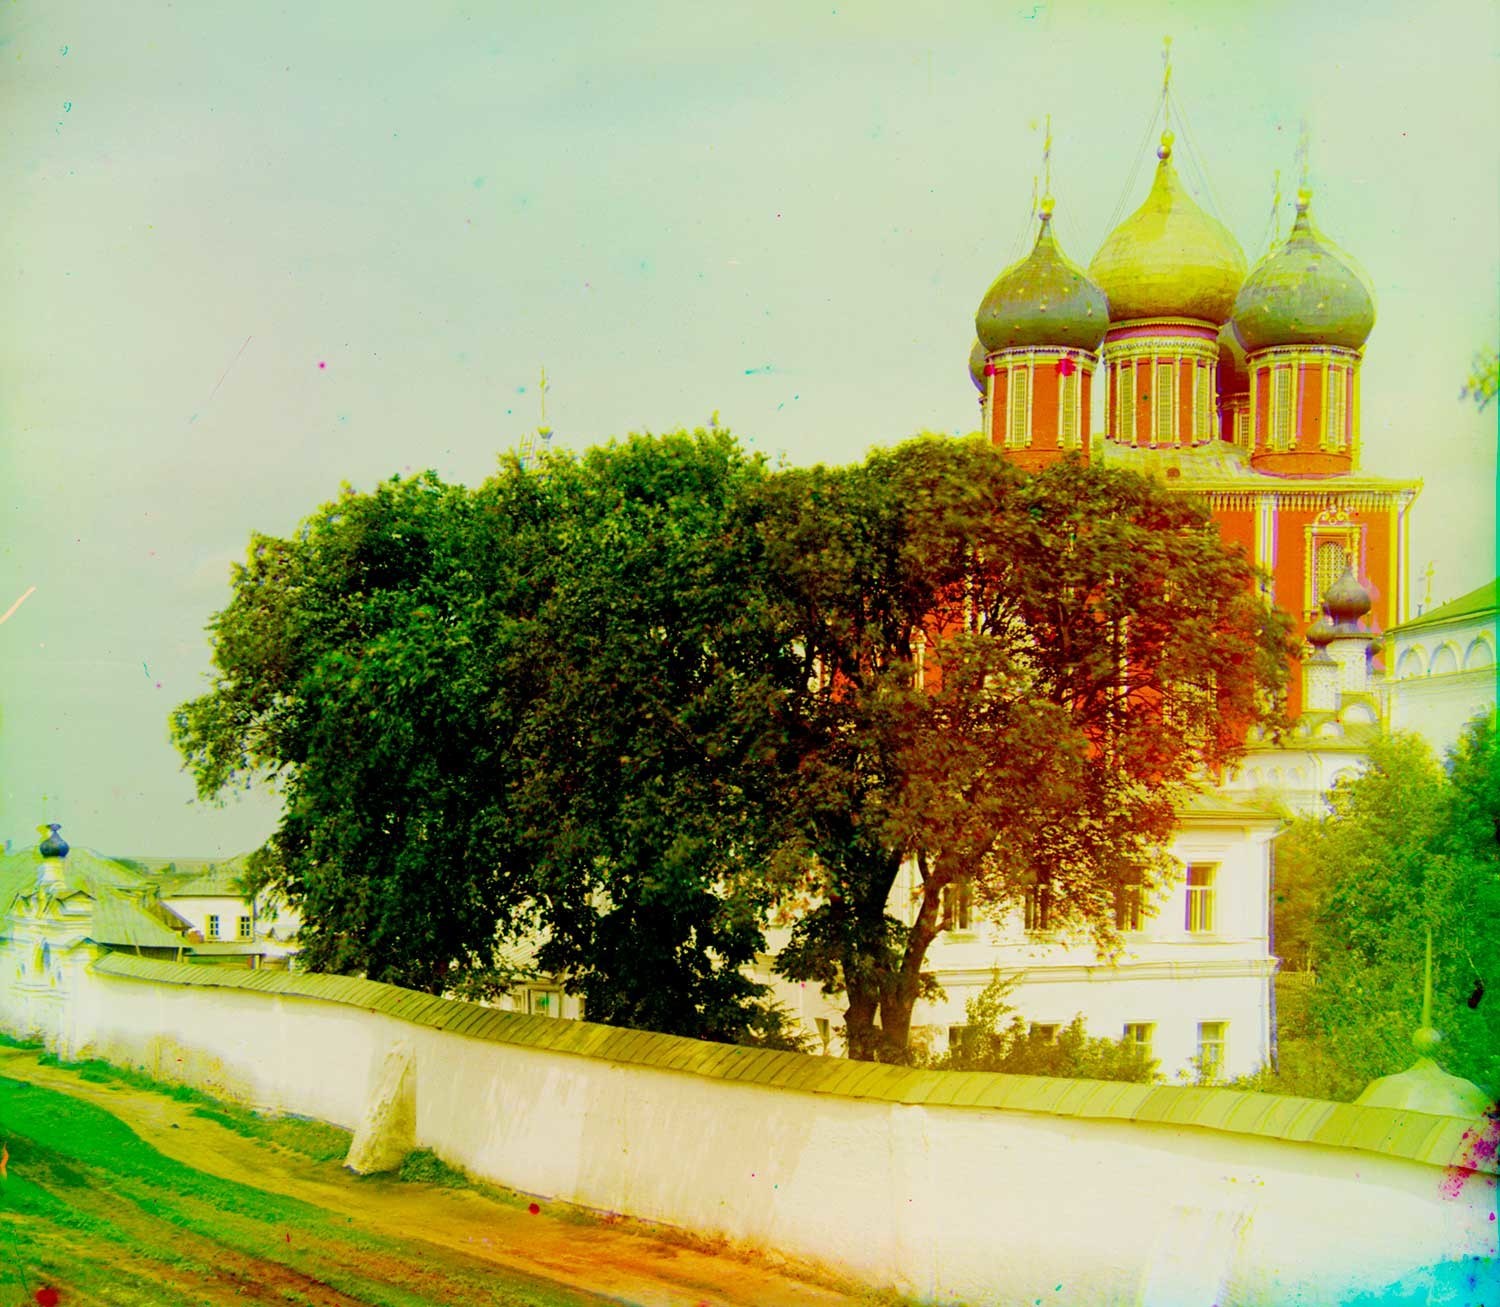 Kremlin de Riazán. Fondo: Catedral de la Dormición. Primer plano: Muro del Monasterio de la Transfiguración, Catedral de la Transfiguración (derecha). Verano de 1912. 